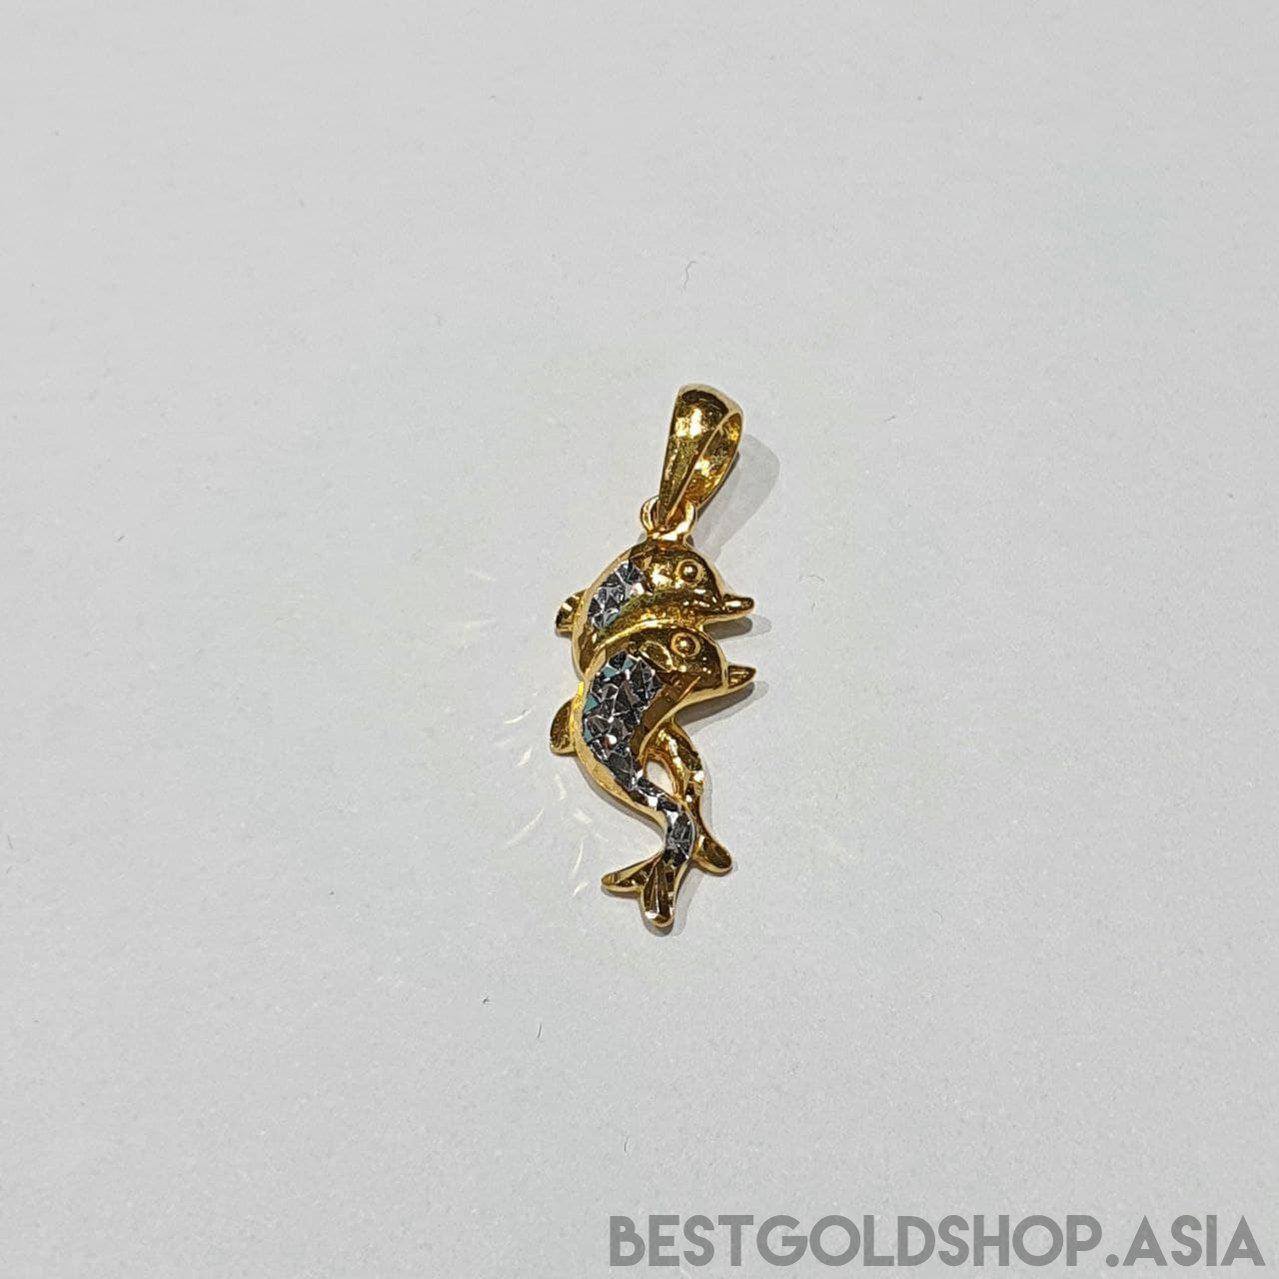 22k / 916 Gold Dolphin Pendant 2 Colour-916 gold-Best Gold Shop